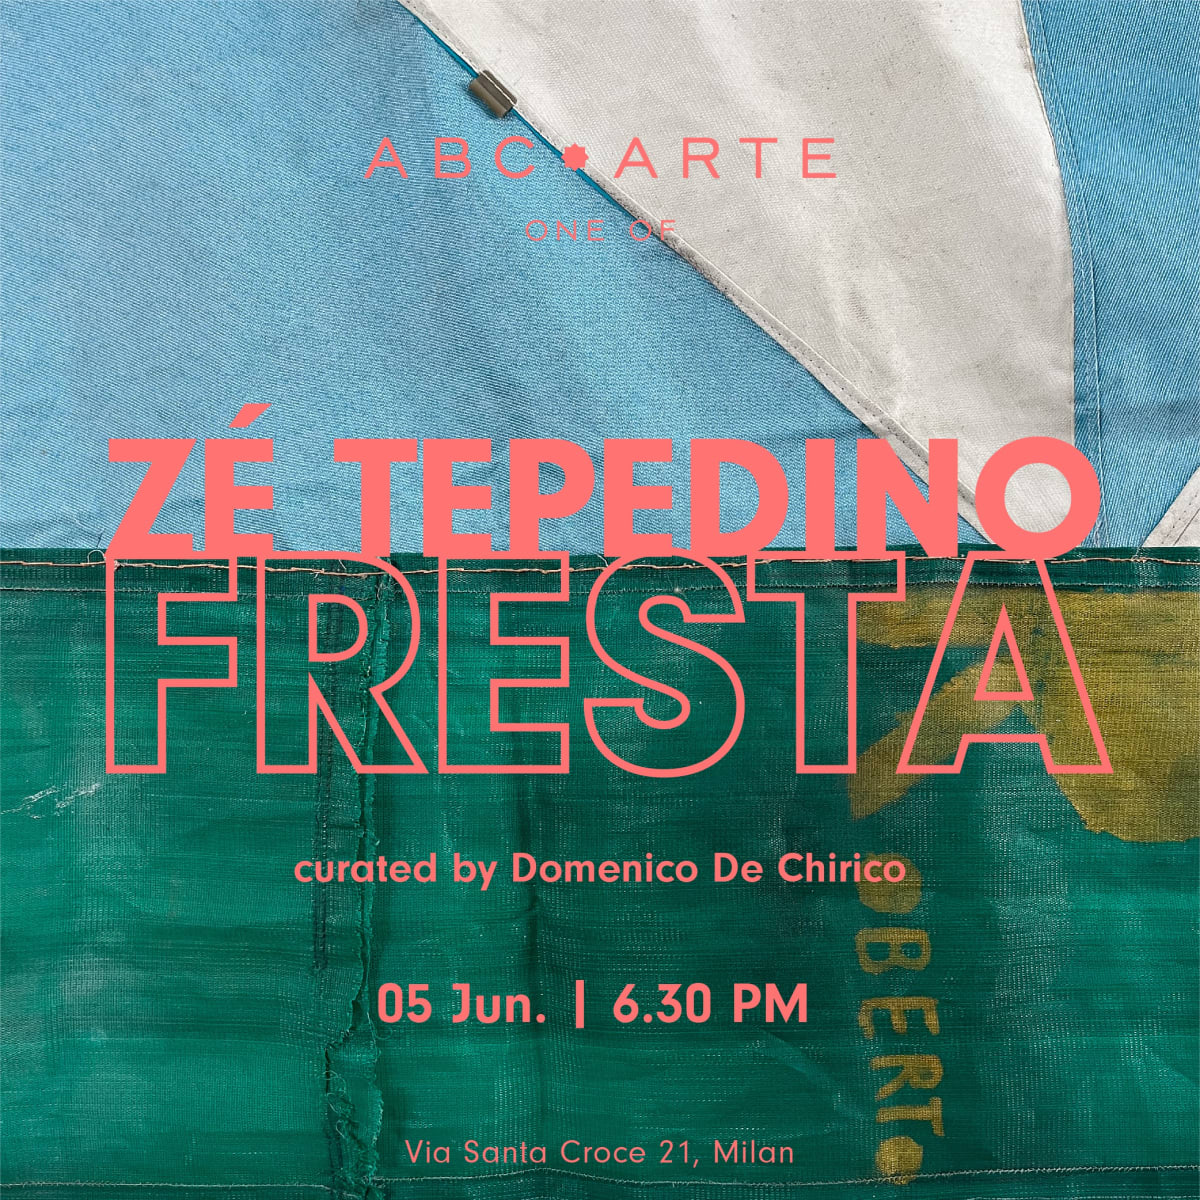 Opening Zè Tepedino, Fresta